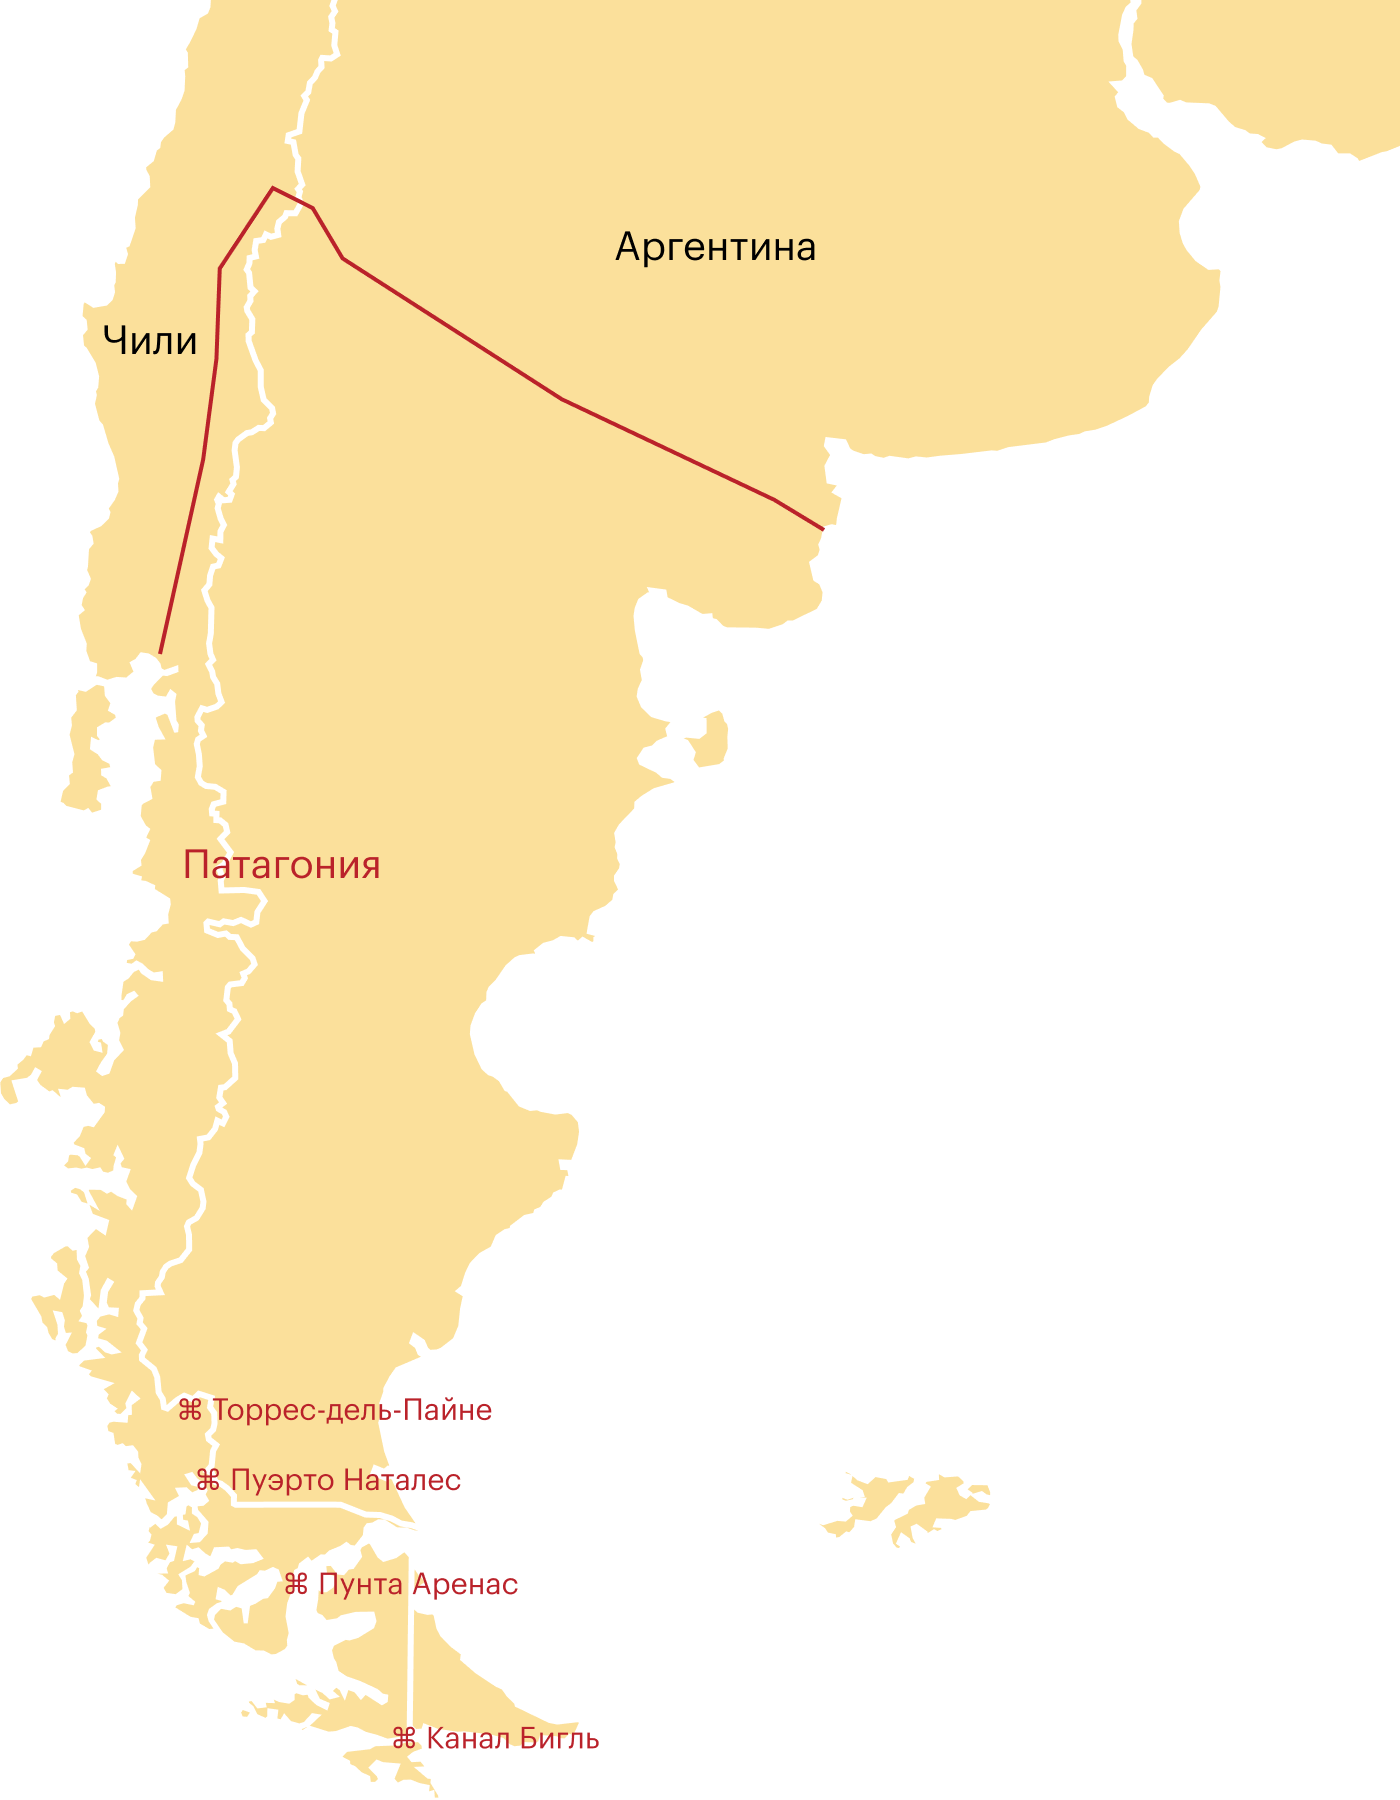 Карта чилийской Патагонии: с востока — граница с Аргентиной, с запада — Тихий океан и фьорды, с юга — мыс Горн, с севера — окрестности Пуэрто⁠-⁠Монта. Еще здесь помечены основные точки в южной части Патагонии, которые будут упомянуты в статье: канал Бигль, Пунта⁠-⁠Аренас и Пуэрто⁠-⁠Наталес с близлежащим парком Торрес⁠-⁠дель⁠-⁠Пайне